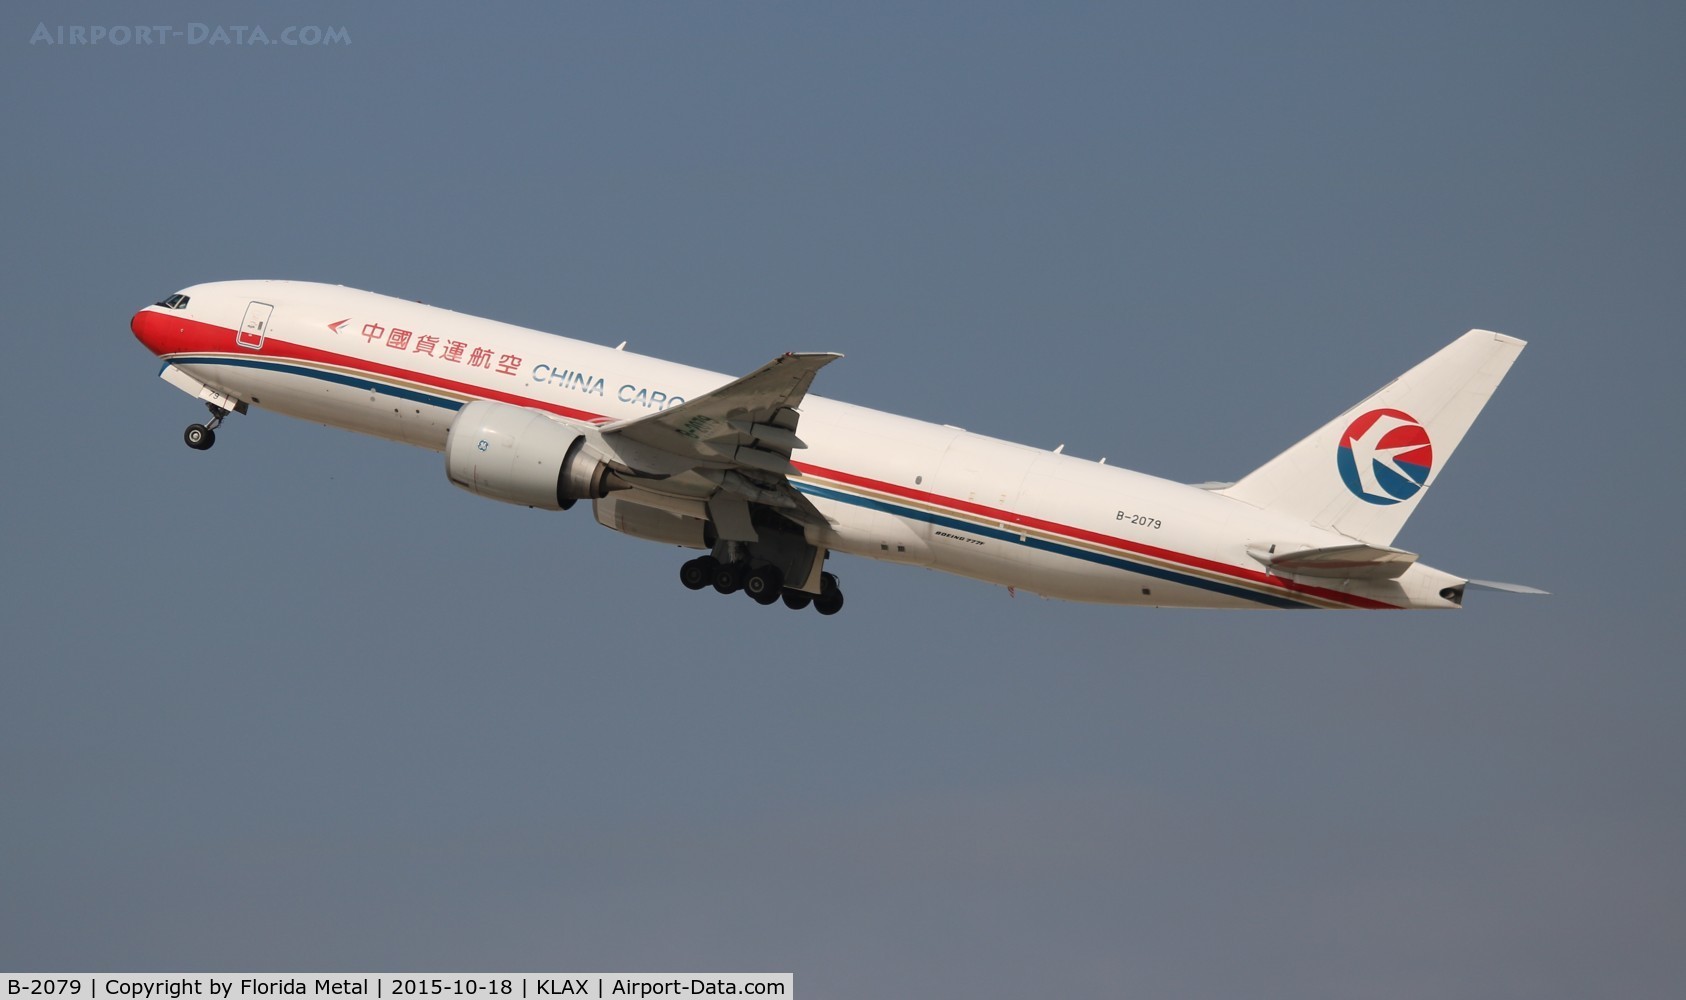 B-2079, 2010 Boeing 777-F6N C/N 37715, China Eastern Cargo 777-200F zx